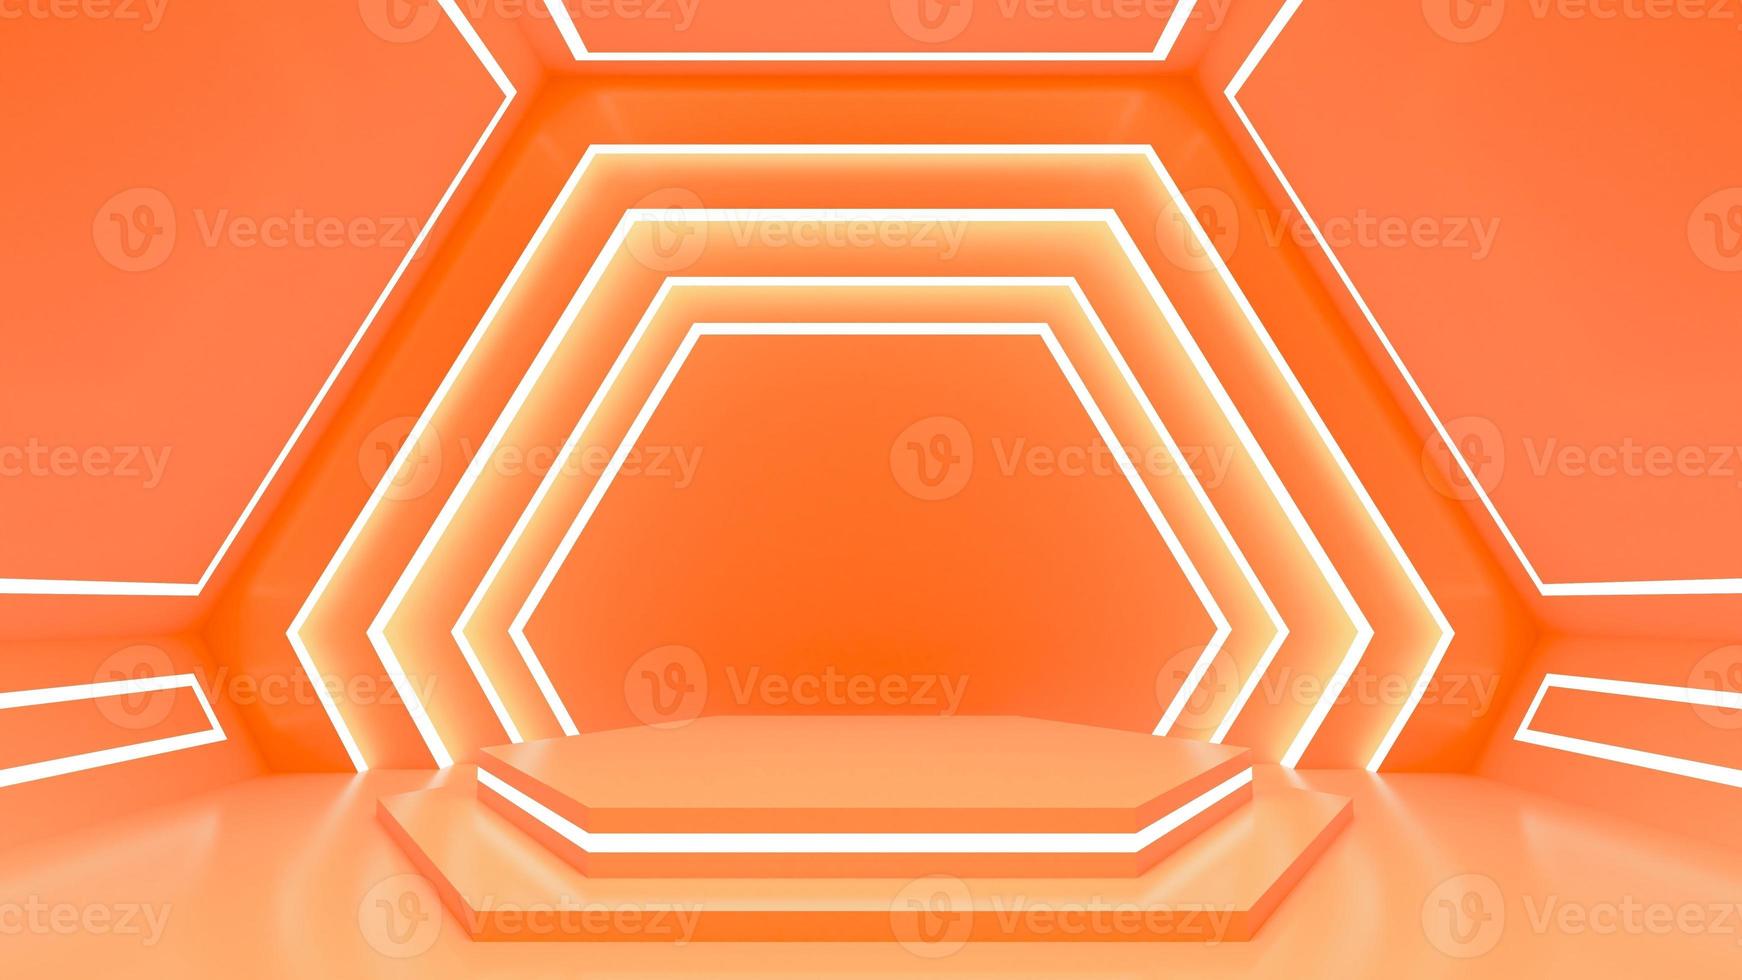 la exhibición del producto se encuentra en un fondo naranja pastel con un fondo hexagonal foto